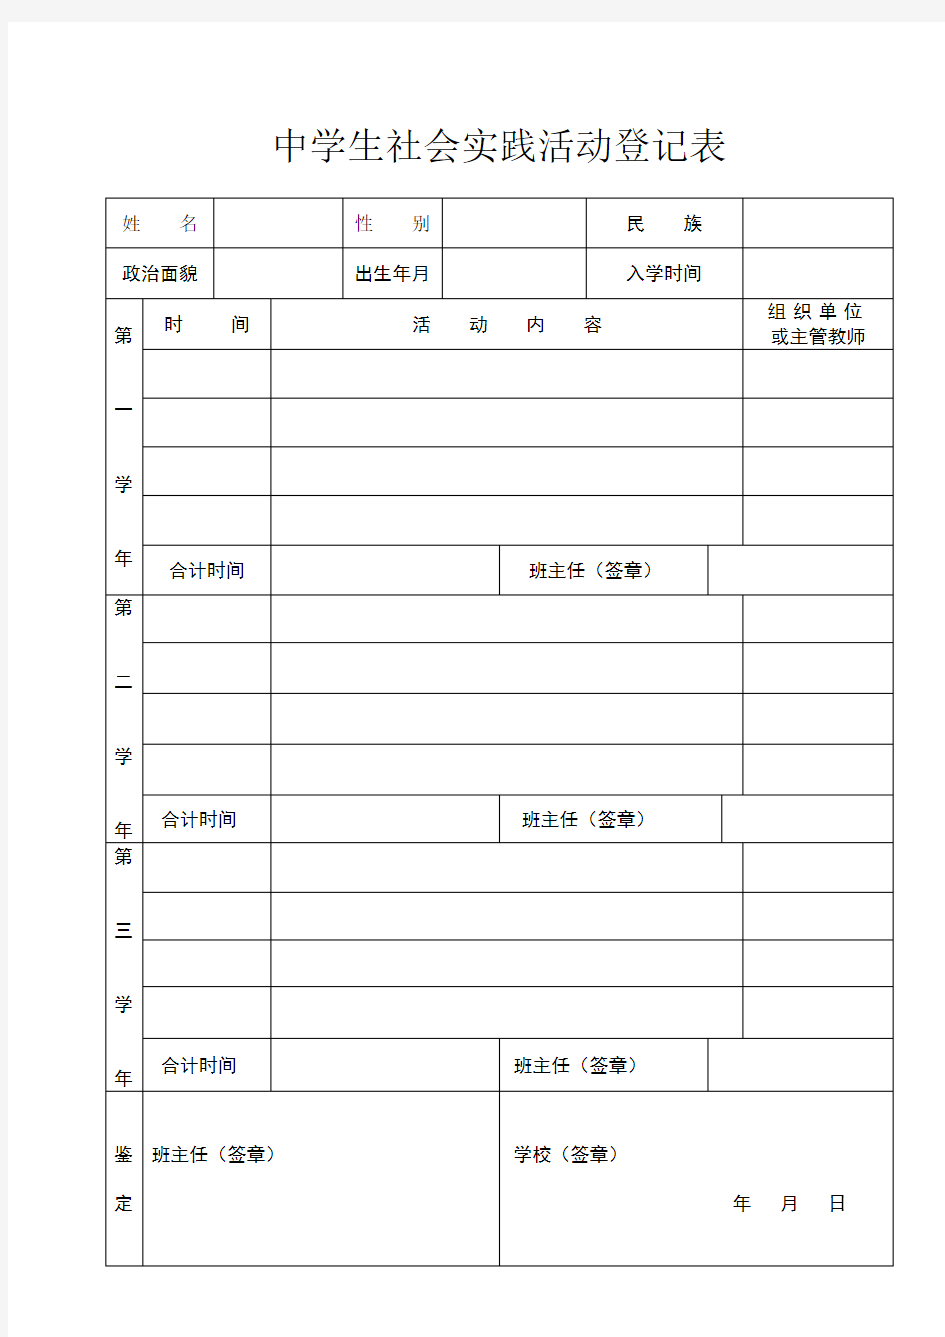 中学生社会实践活动登记表表格